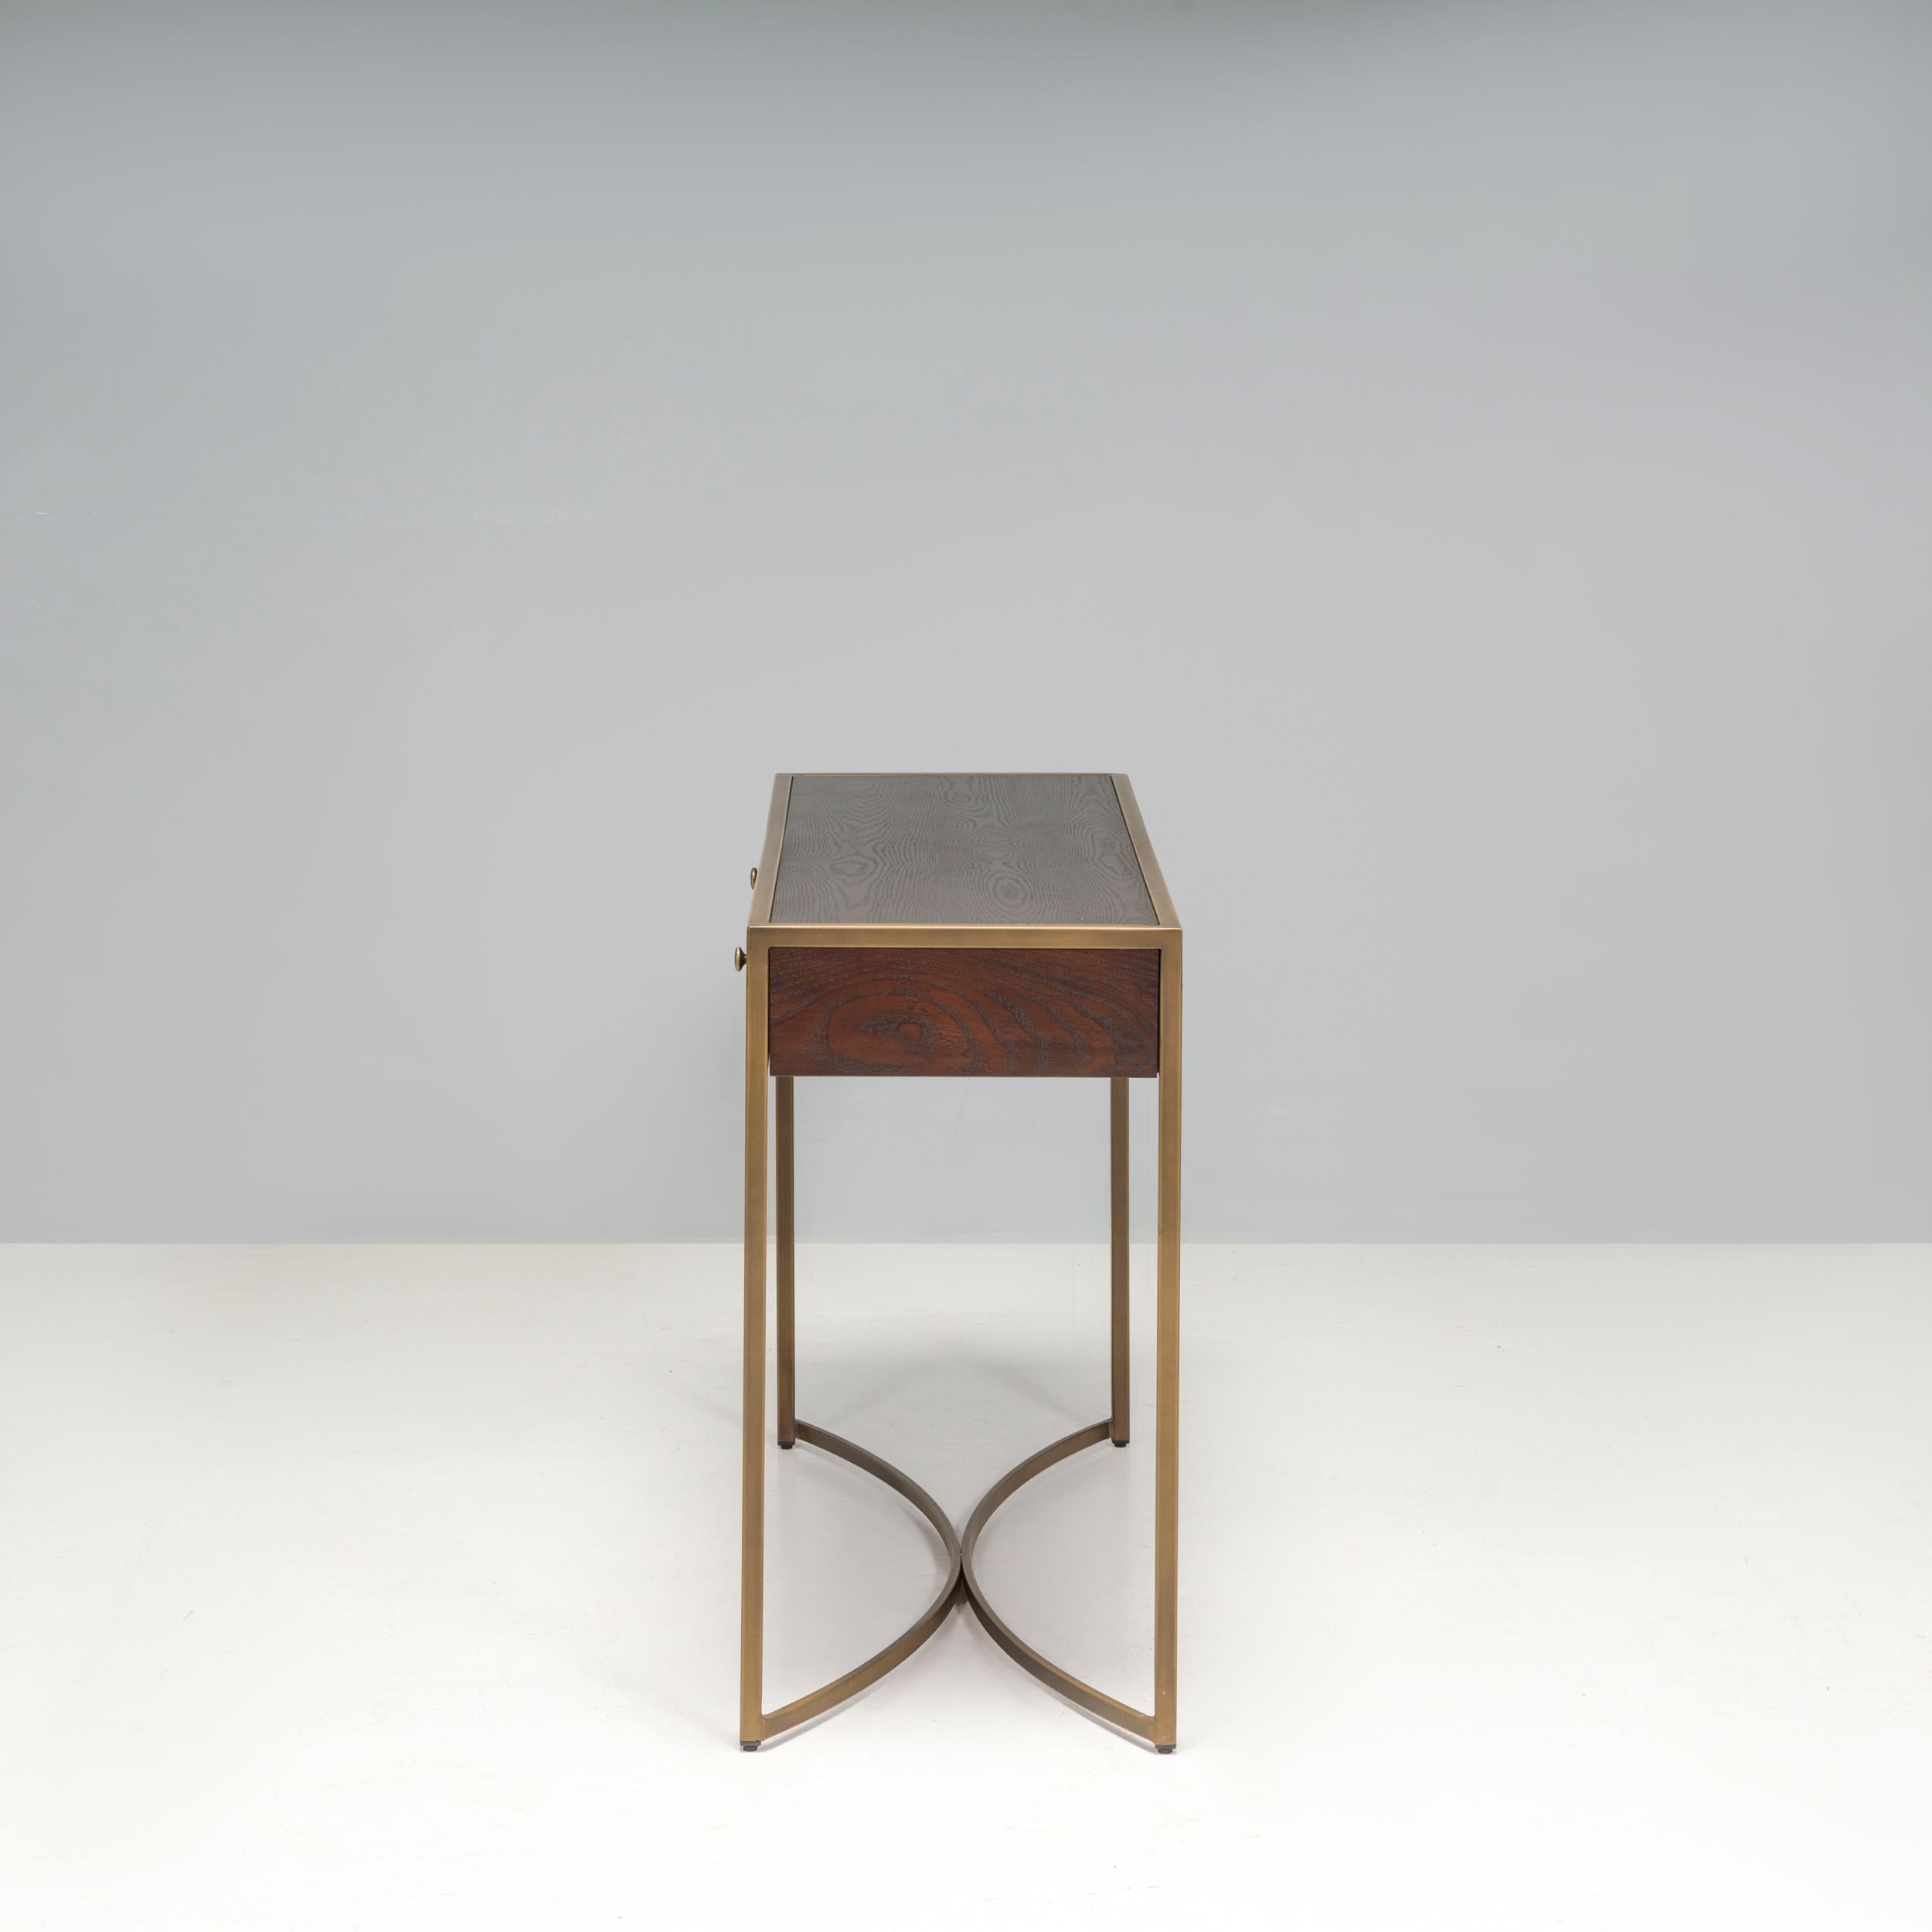 Établis en 2011, Liang & Eimil créent des meubles intemporels avec des matériaux de qualité et la durabilité au premier plan de leurs conceptions. La table Rivoli est fabriquée à partir d'un placage de frêne brun et d'une garniture métallique en